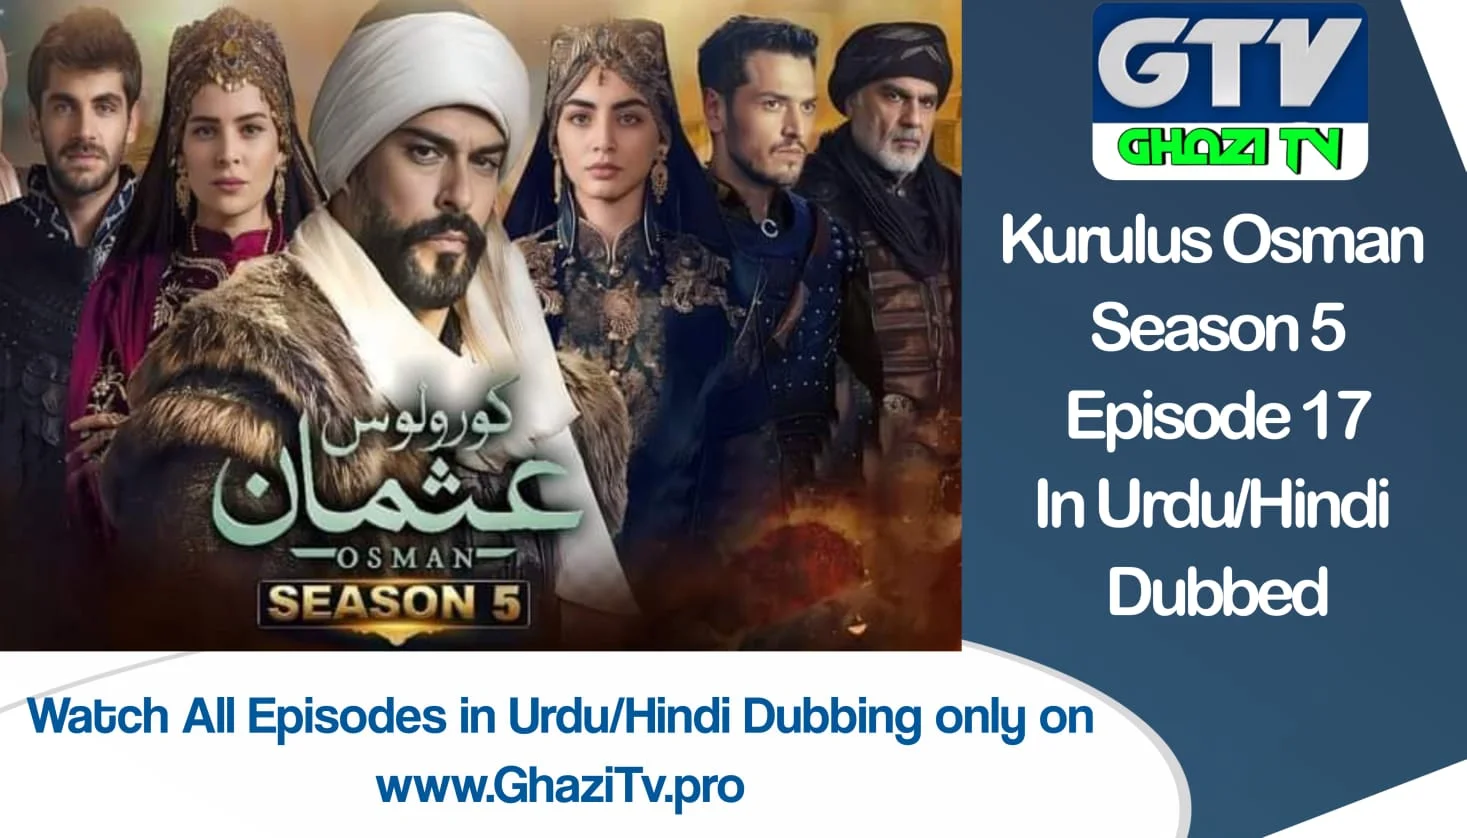 Kurulus Osman Season 5 Episode 17 in Urdu Dubbing